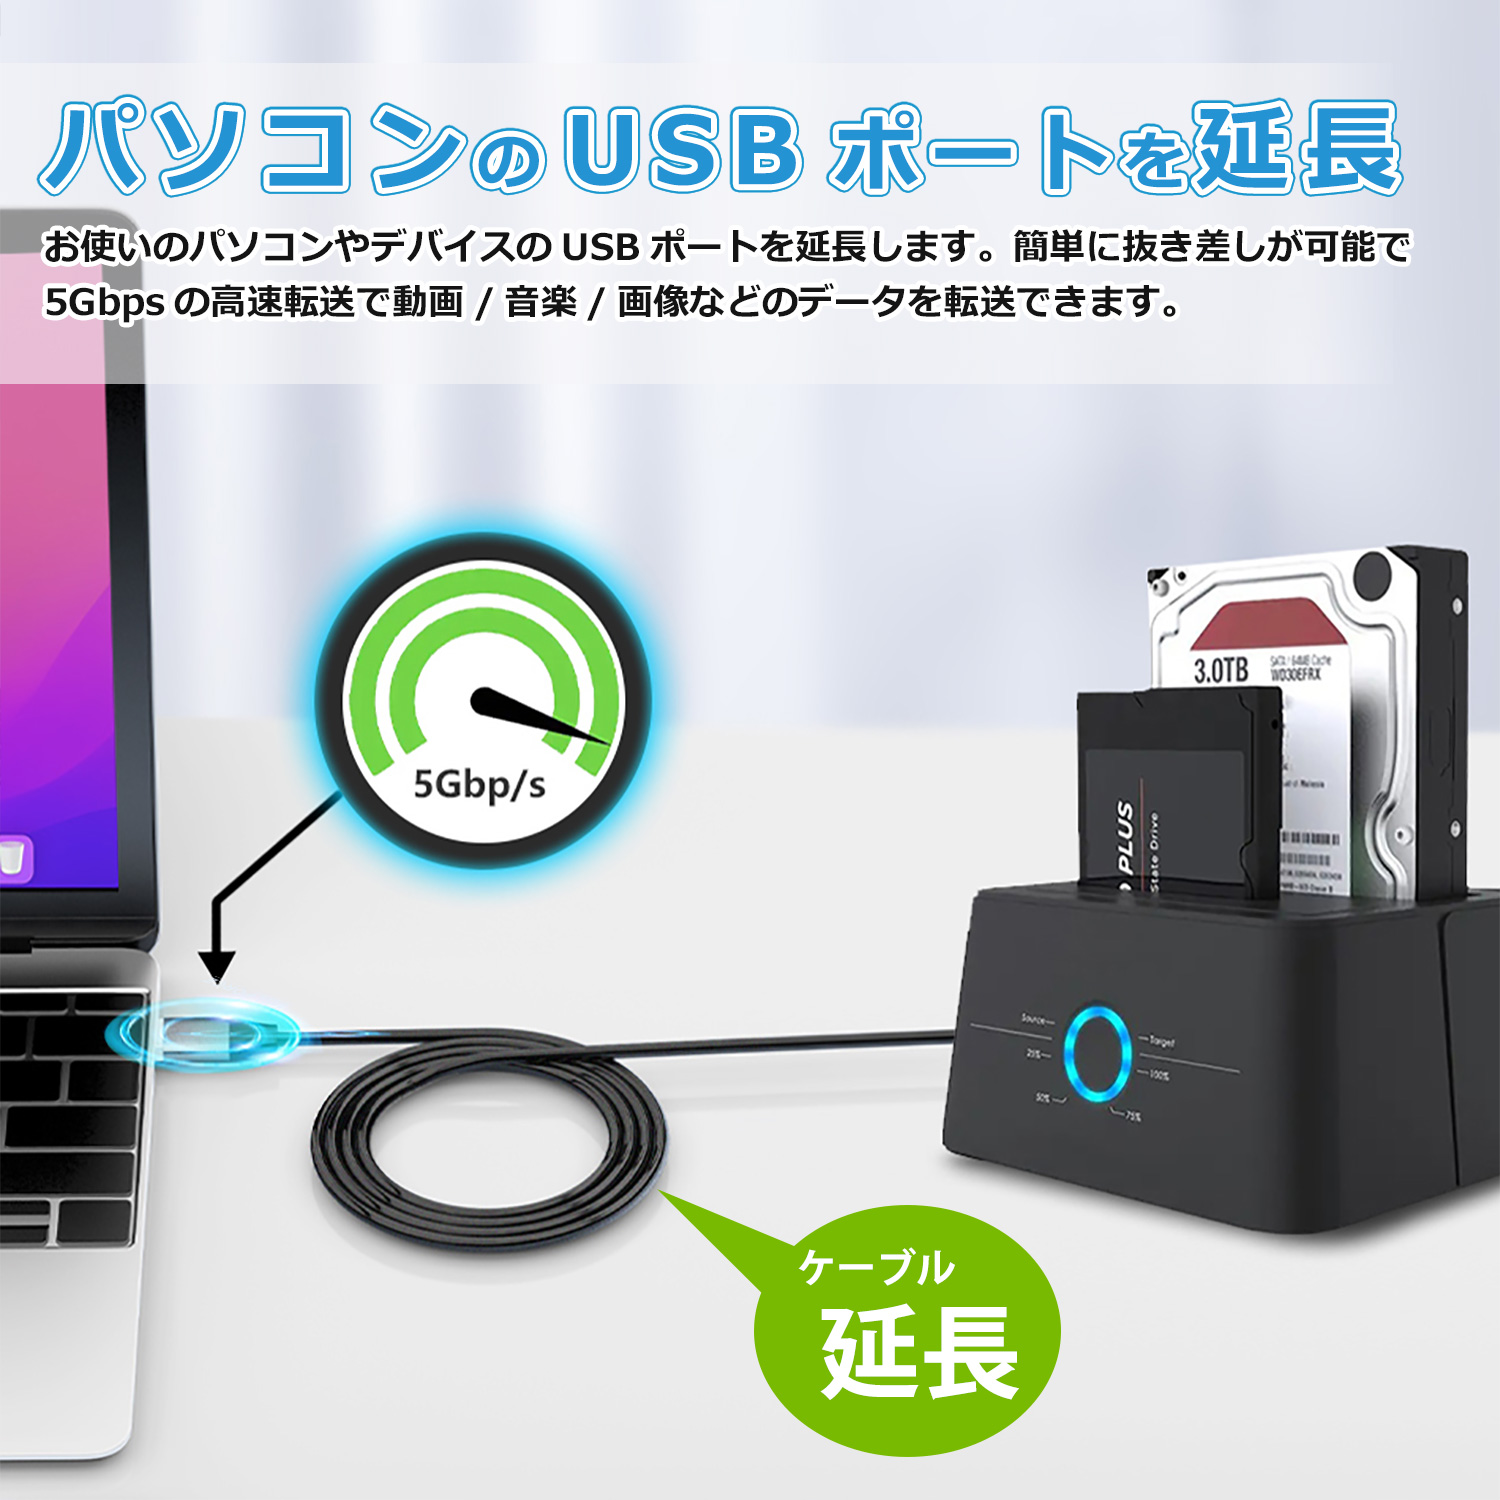  сегодня максимальный 600 иен скидка USB 3.0 кабель позолоченный коннектор 5Gbp модель A to модель A мужской - мужской коннектор высокая скорость данные пересылка 0.5m 1m 2m u3a2a бесплатная доставка 